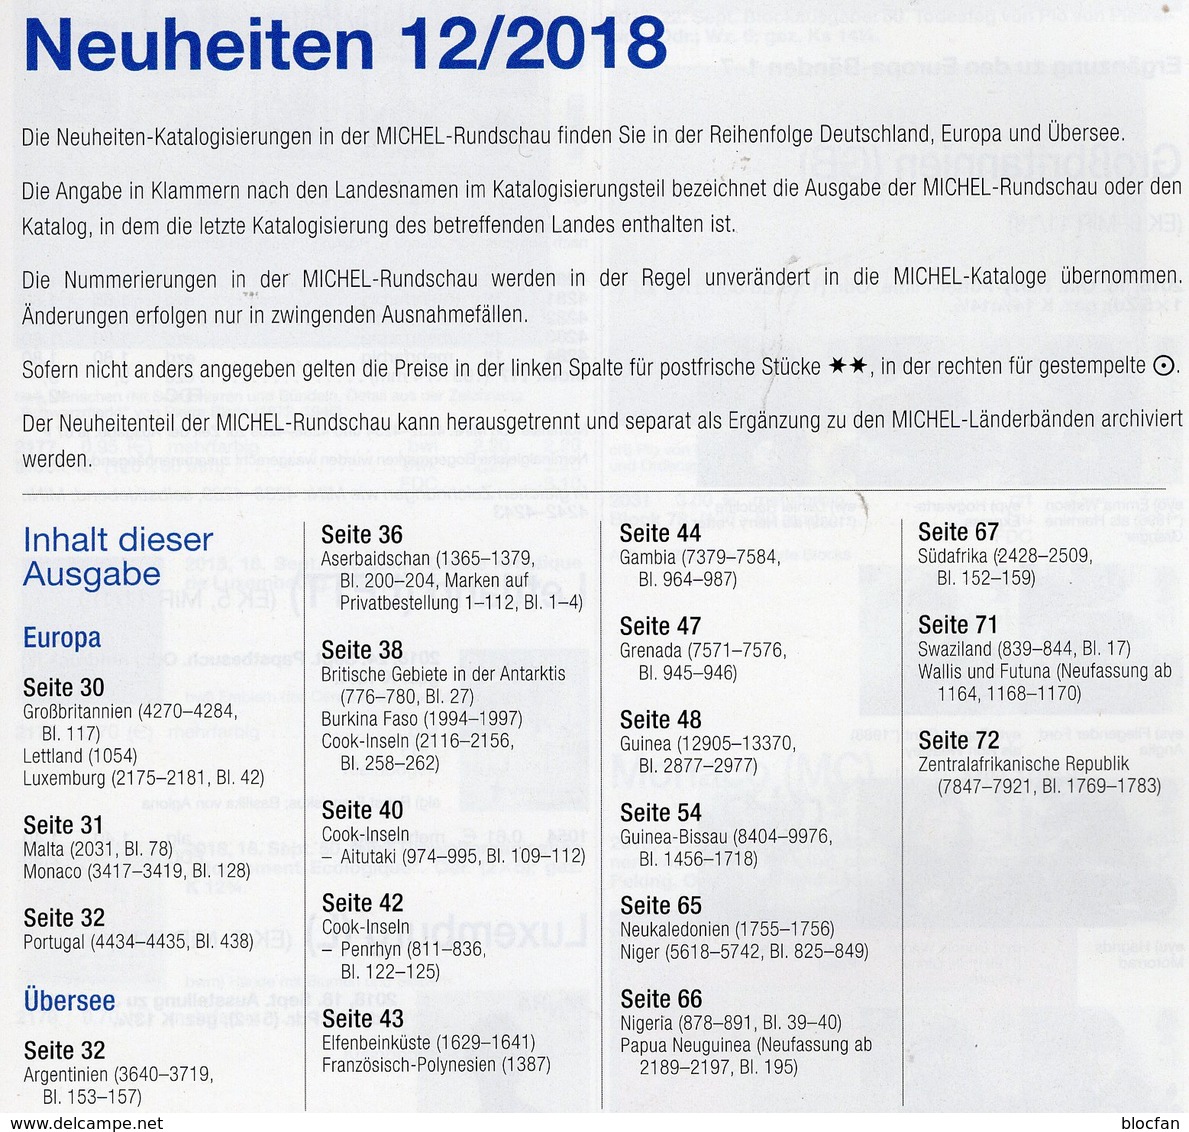 Briefmarken Rundschau MICHEL 12/2018 Neu 6€ Stamp Of The World Catalogue/magacine Of Germany ISBN 978-3-95402-600-5 - Deutsch